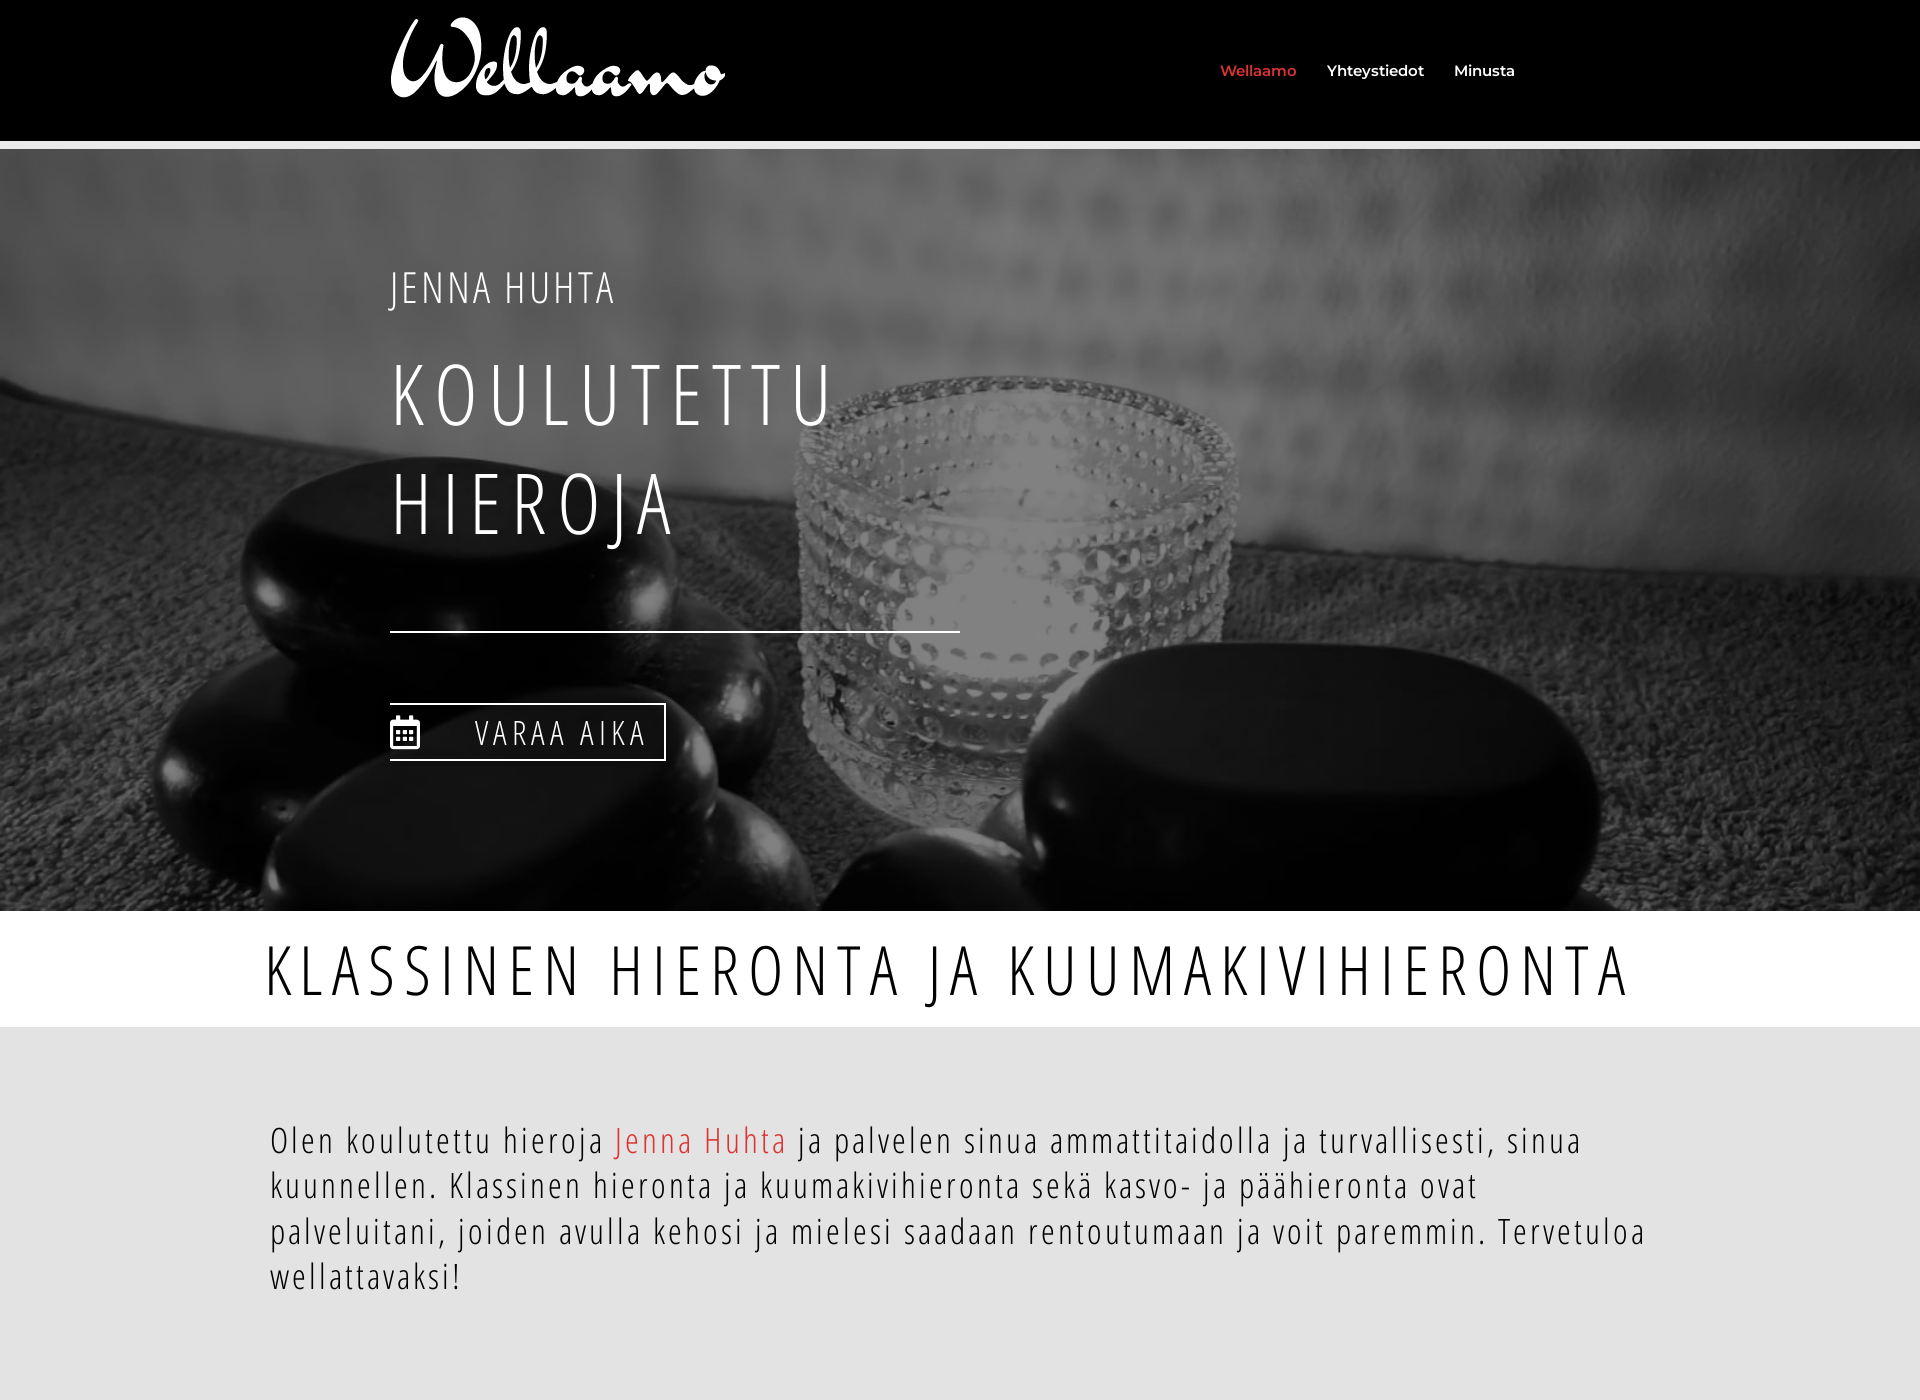 Näyttökuva wellaamo.fi